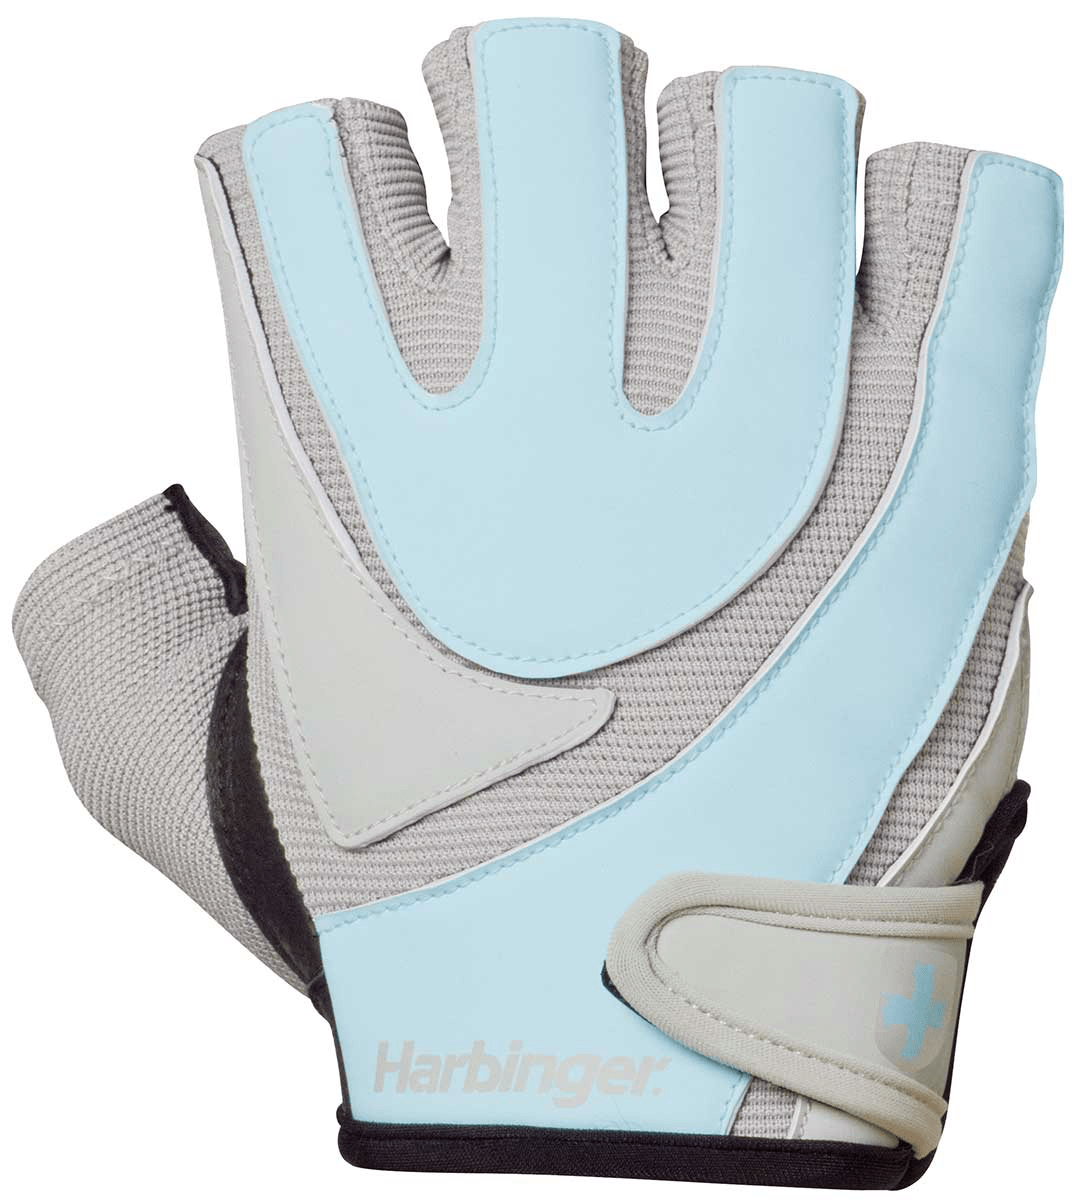 MeFitPro Harbinger Training Women's Grip Gloves